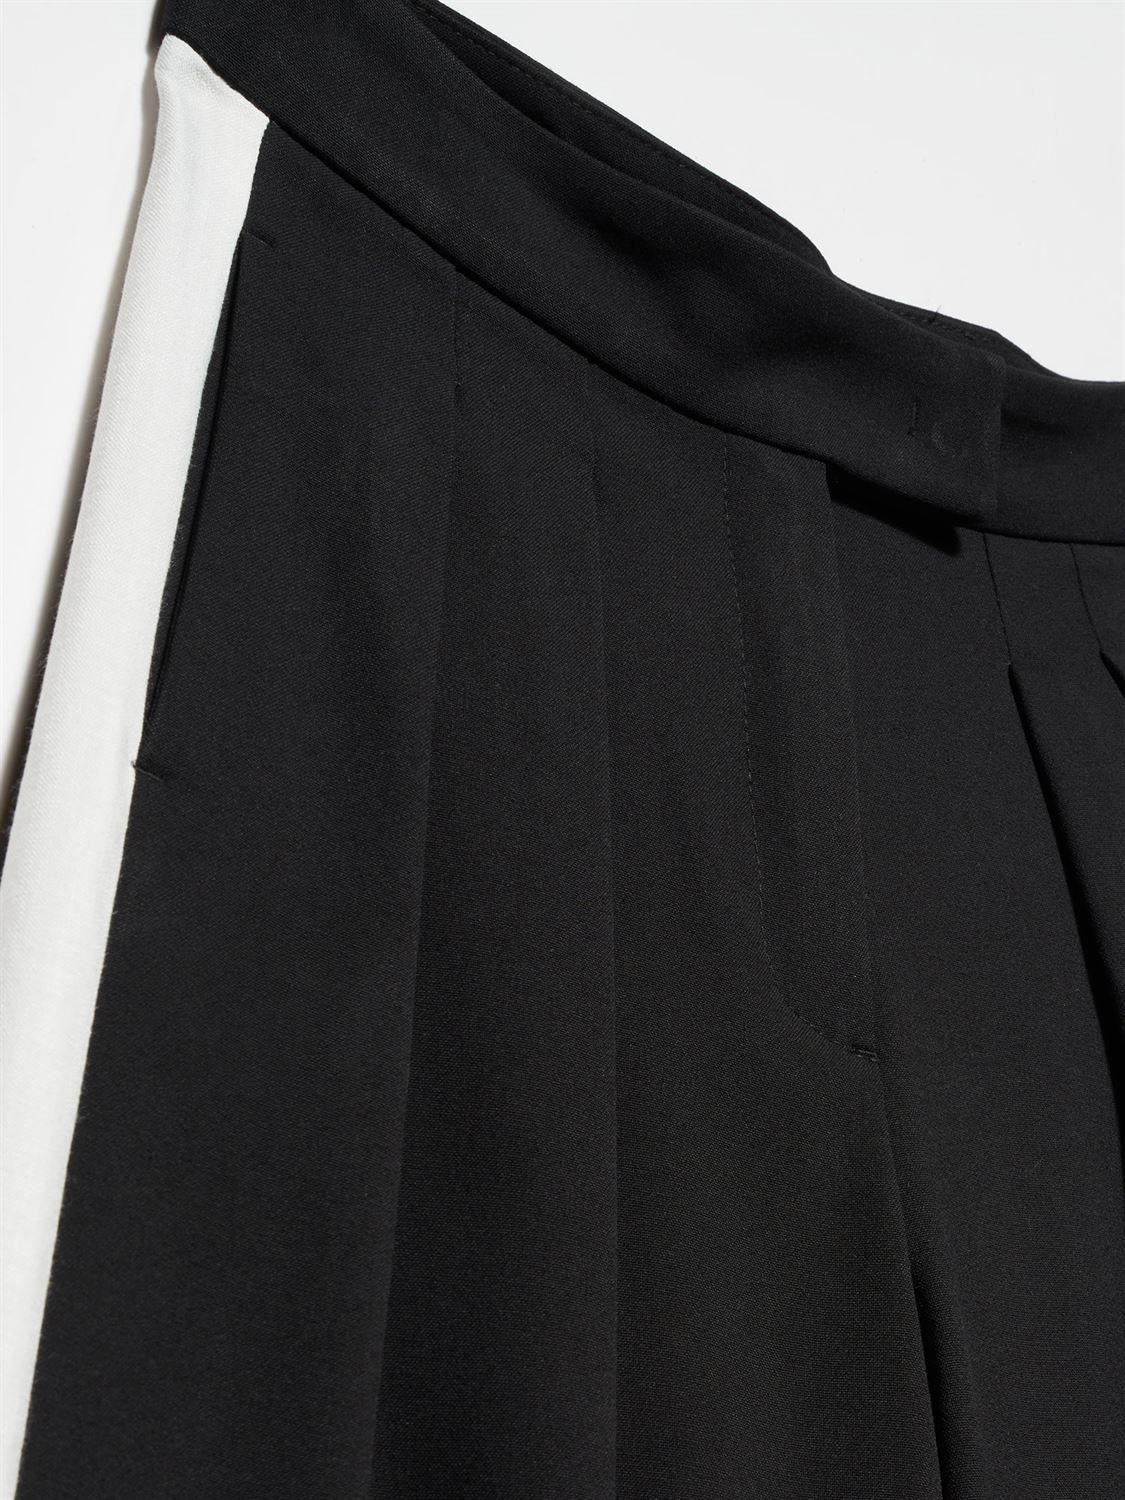 71145 Yanları Şeritli Geniş Paça Klasik  Pantolon-Siyah